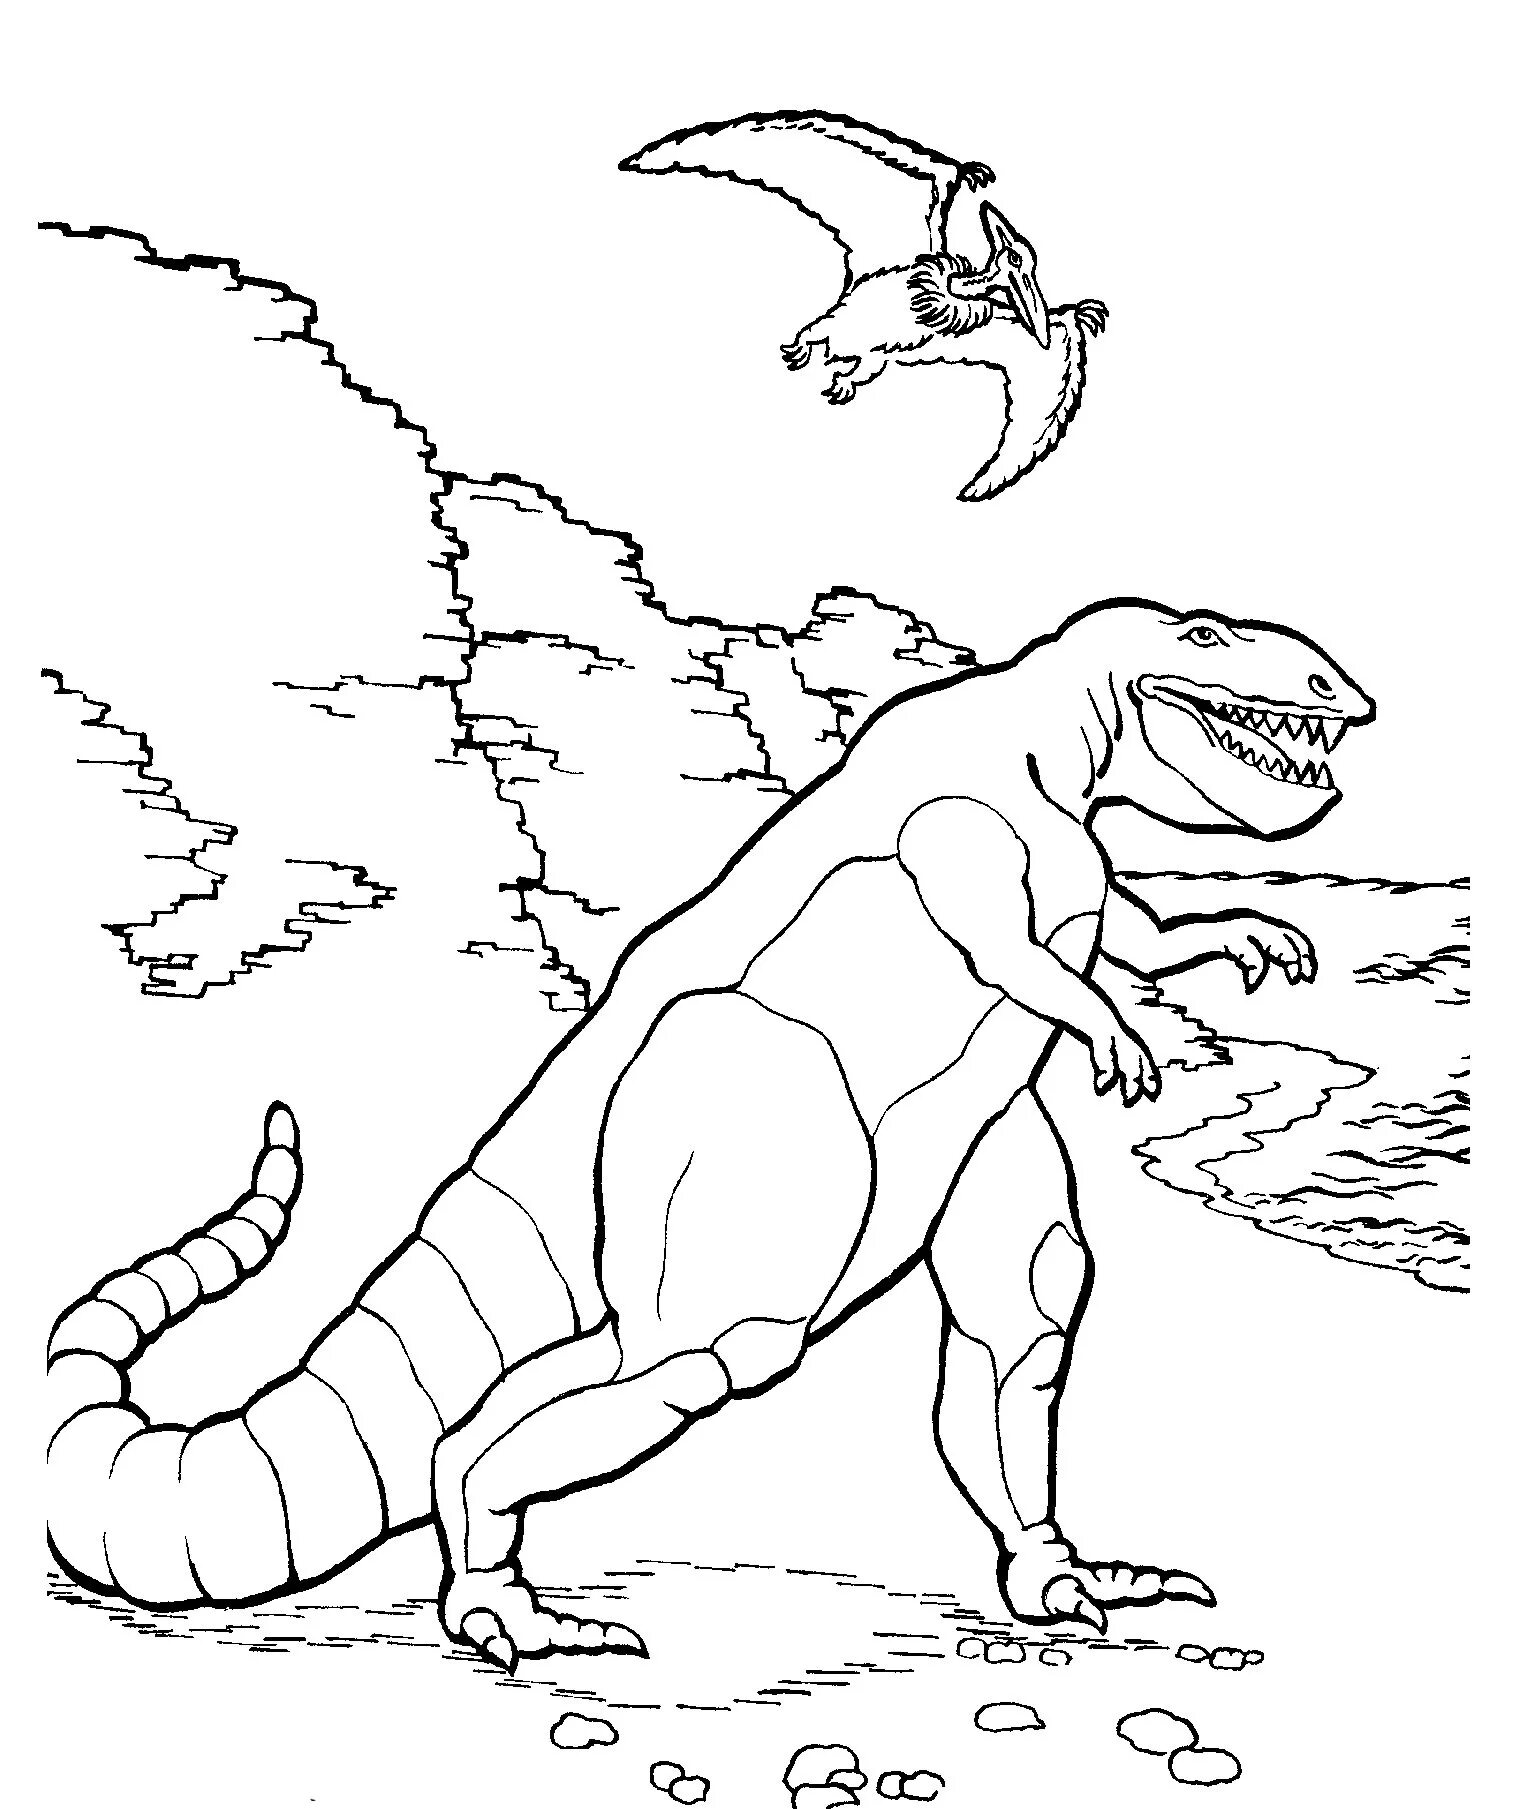 Раскраски динозавры а4. Тарбозавр раскраска динозавра. Раскраски для мальчиков Тарбозавр. Тарбозавр разукрашка. Динозавры / раскраска.